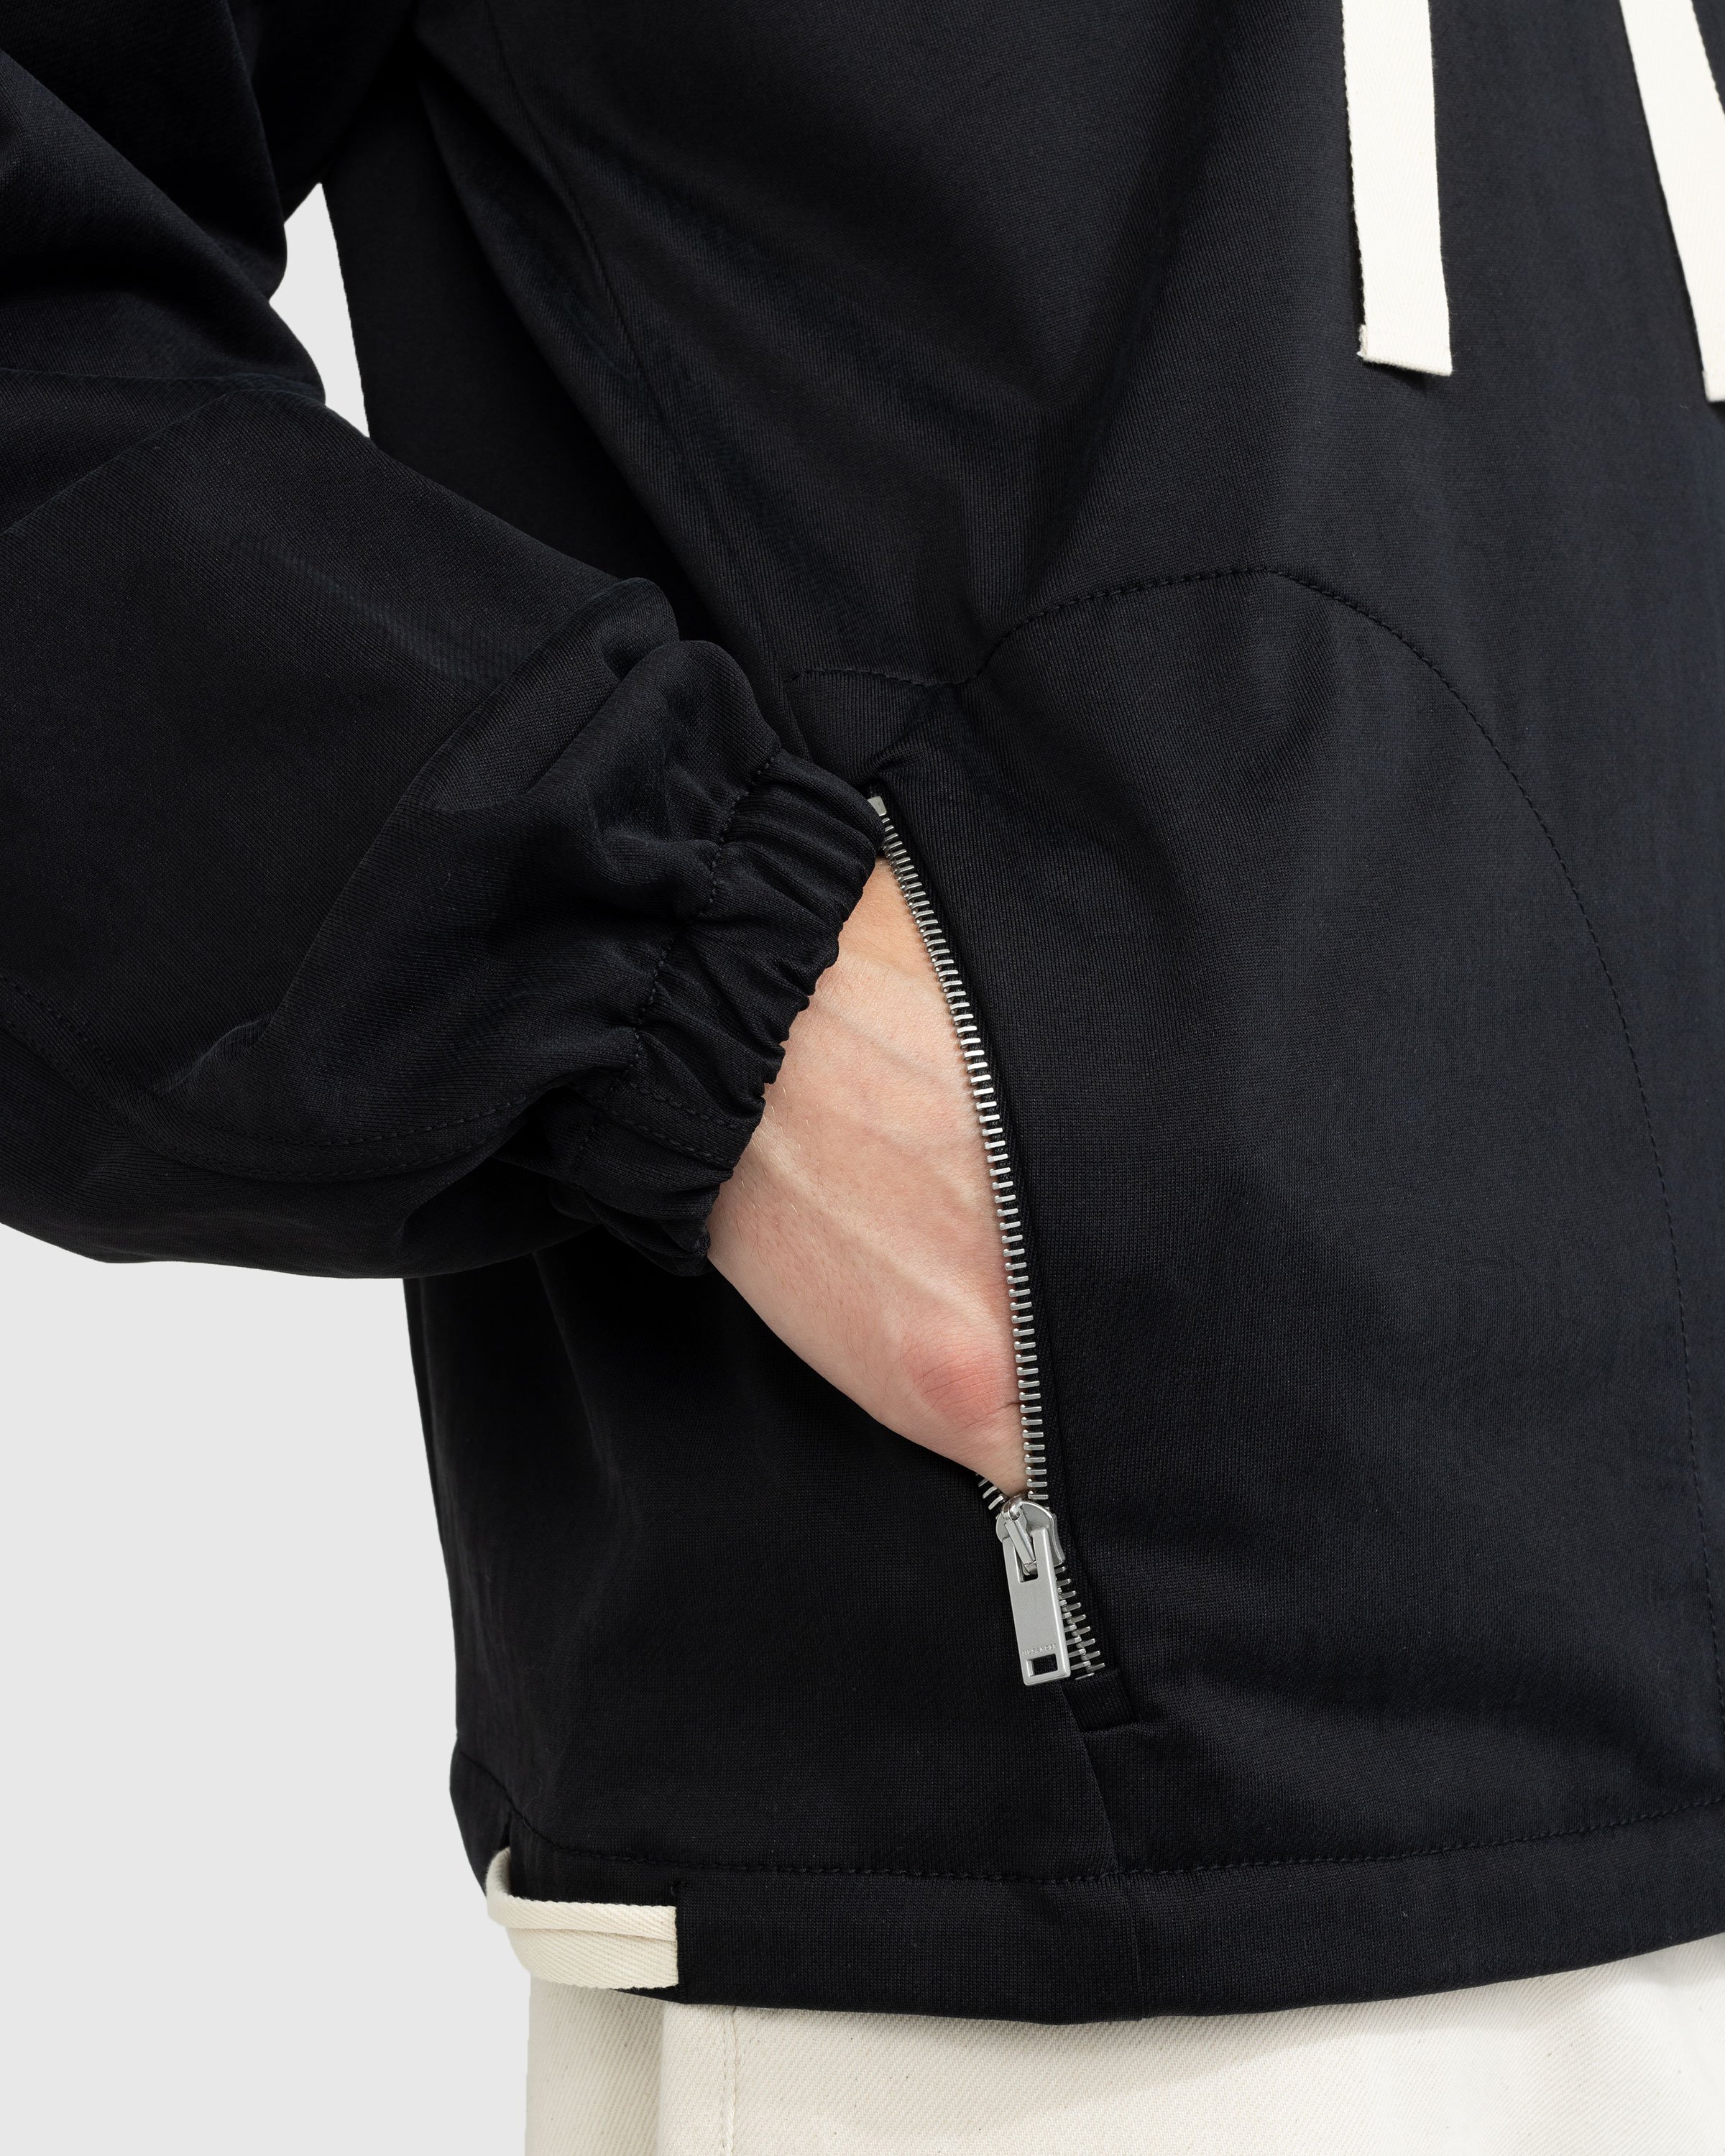 Jil Sander - Hooded Sweatshirt Black - Clothing - Black - Image 4